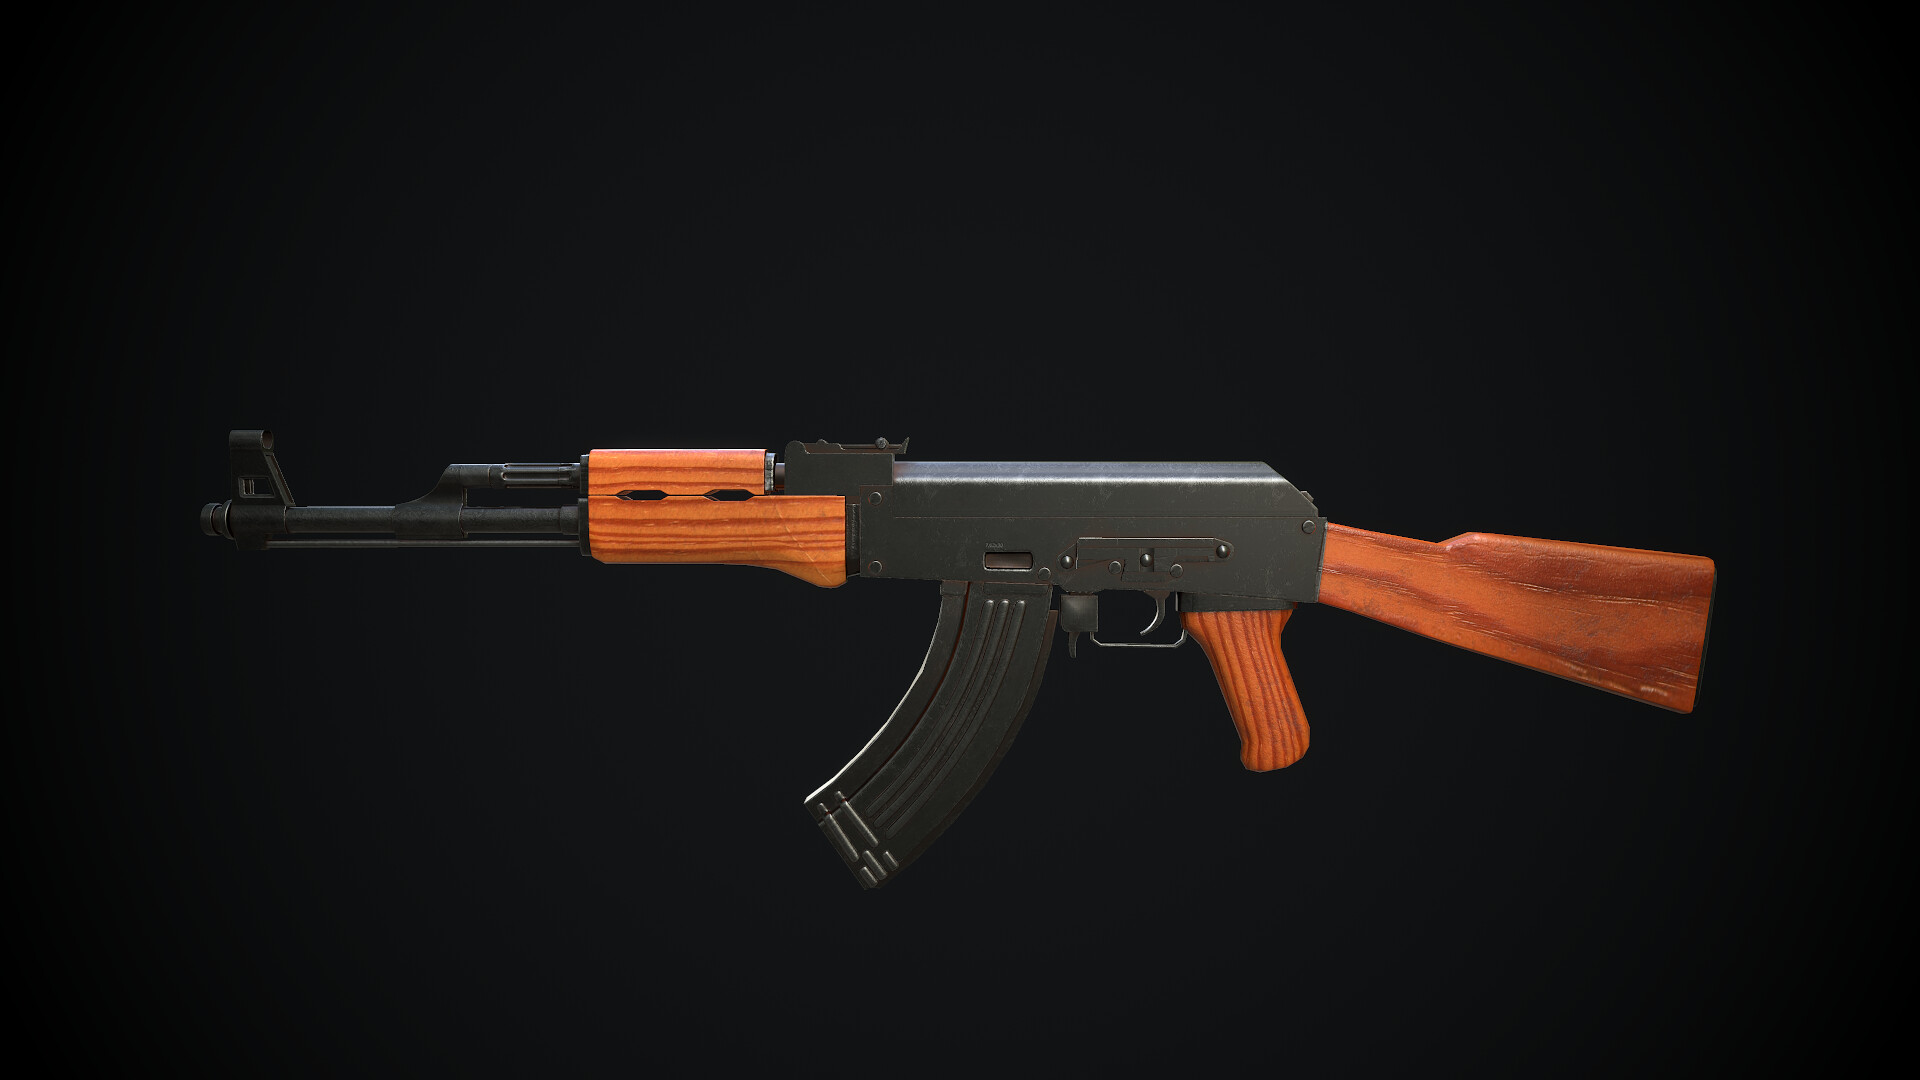 AK-47 GameReady là hình ảnh chân thực và rõ ràng nhất về khẩu súng này, tạo cảm giác chân thực như đang chạm tay vào vũ khí thật.